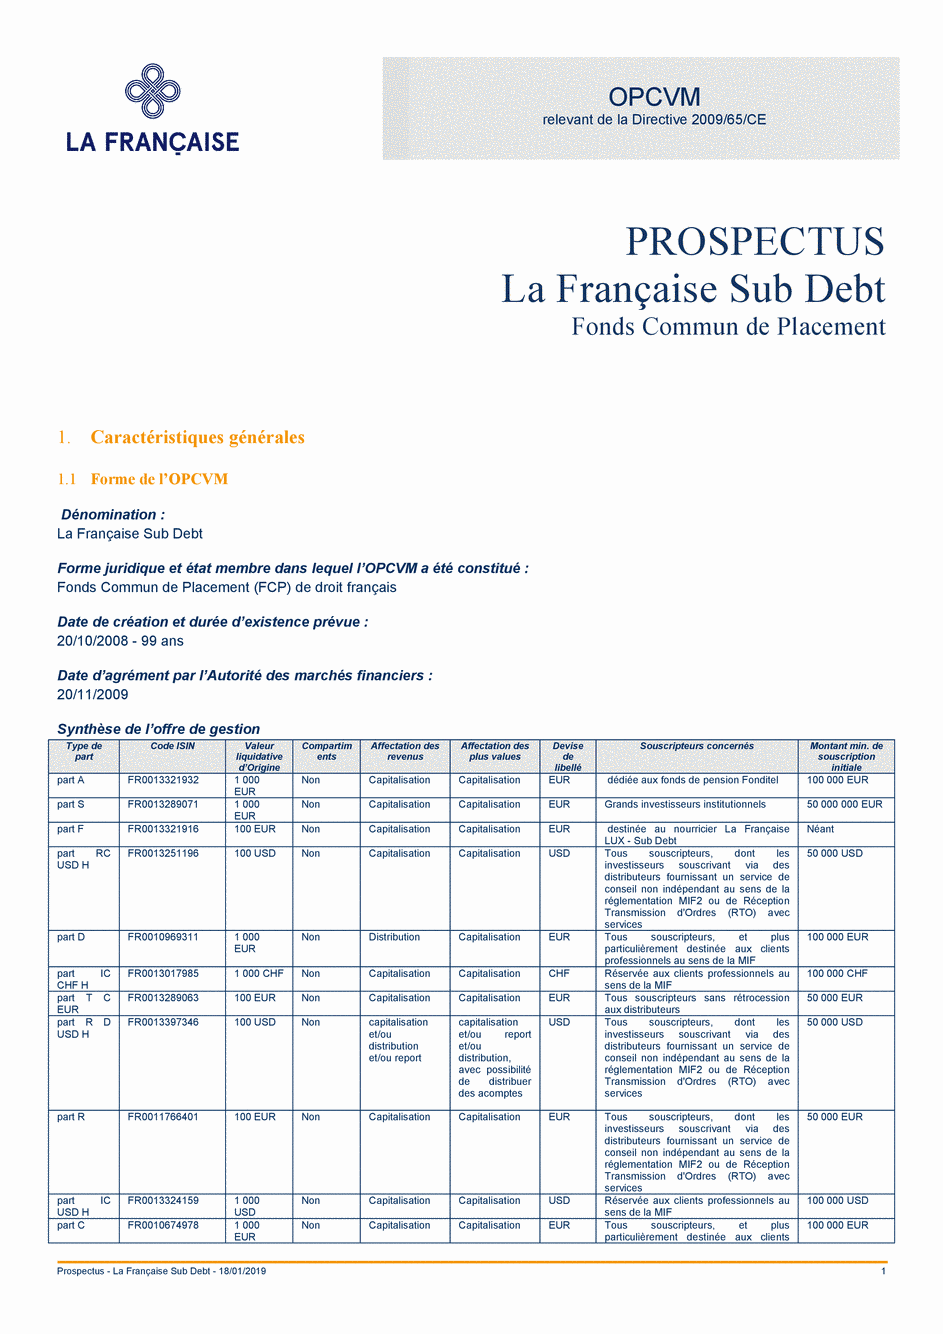 Prospectus La Française Sub Debt - Part IC CHF H - 18/01/2019 - French